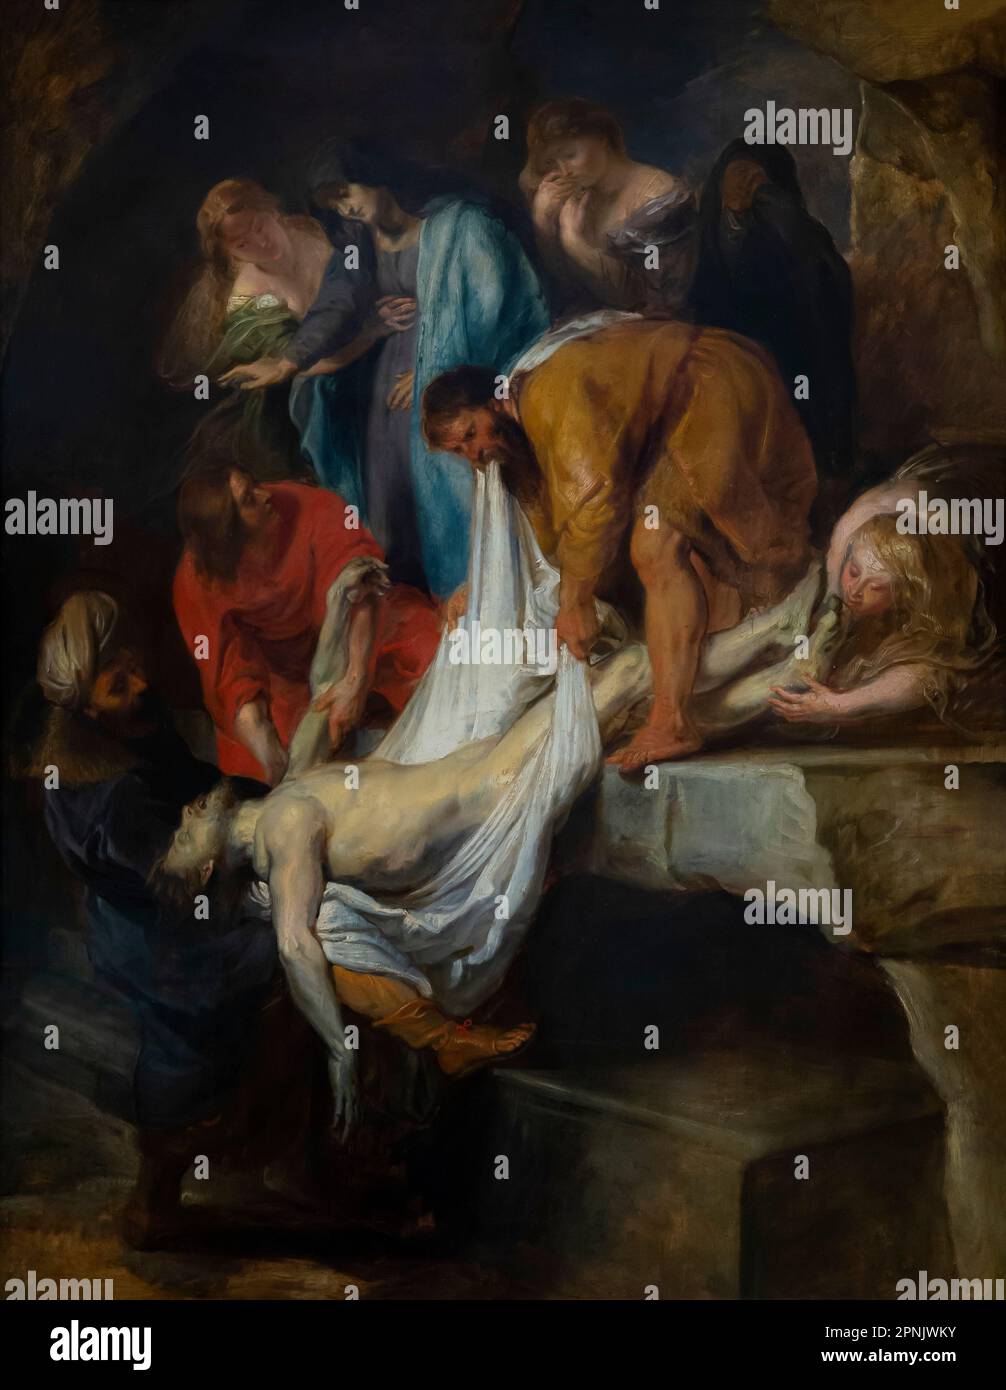 Descente de la Croix, Peter Paul Rubens, 1615-1616, Courtauld Gallery, Londres, Angleterre, Royaume-Uni Banque D'Images